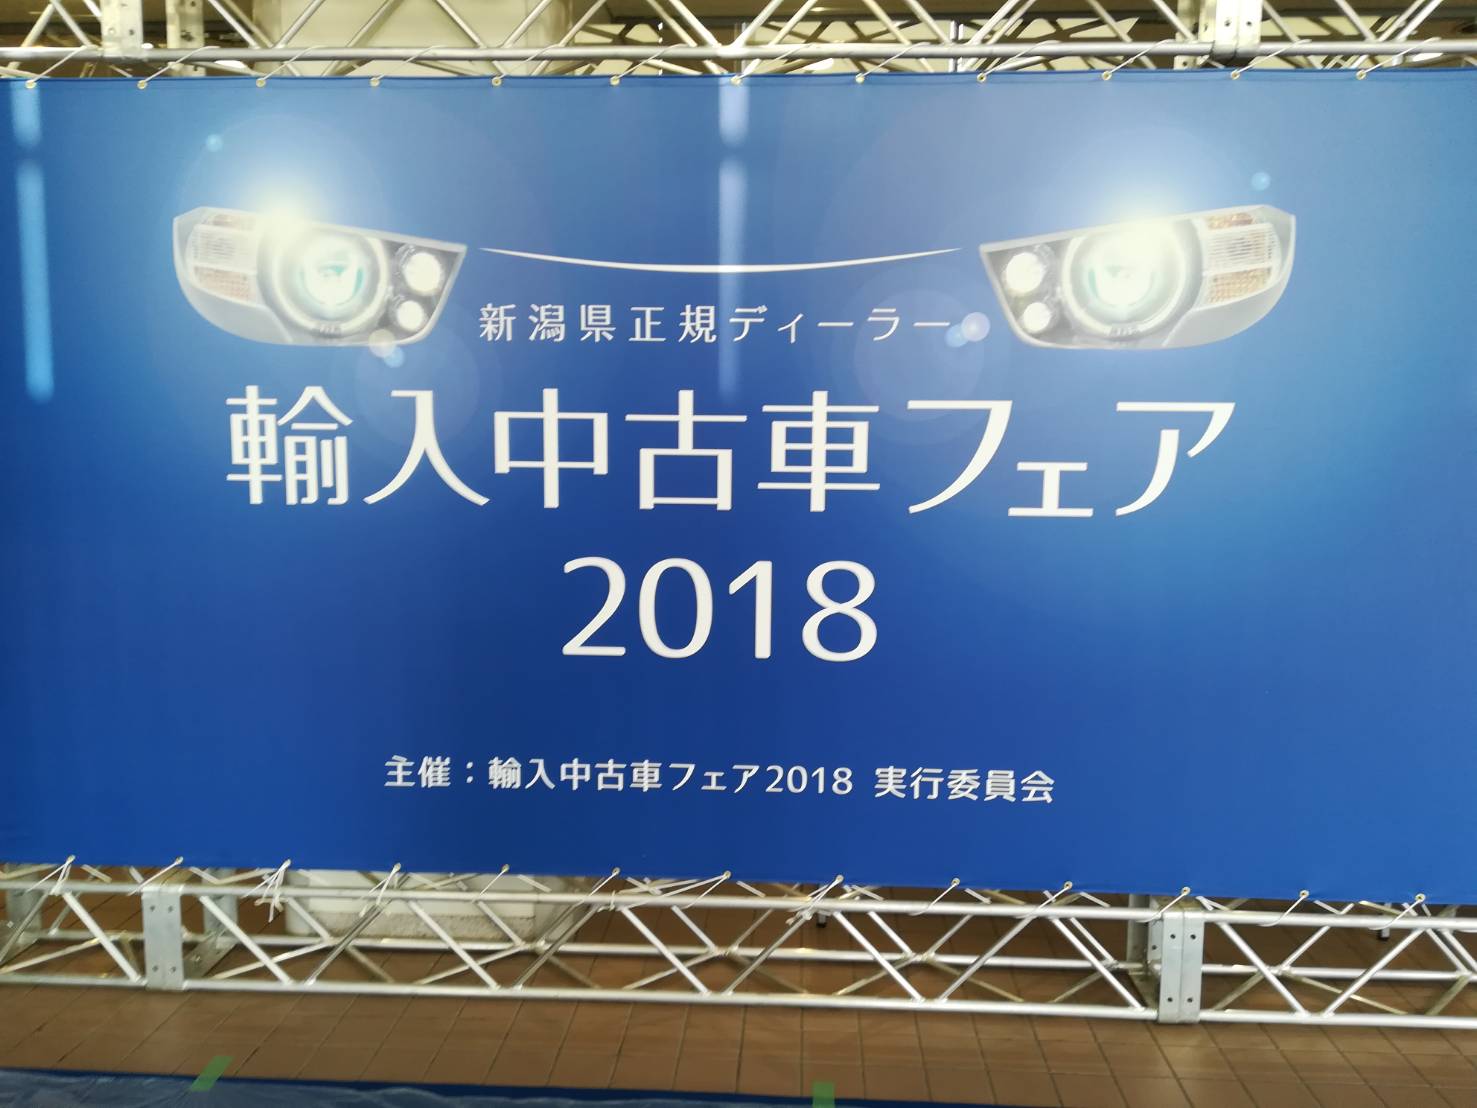 新潟県正規ディーラー輸入中古車フェア2018 in Niigata！！！